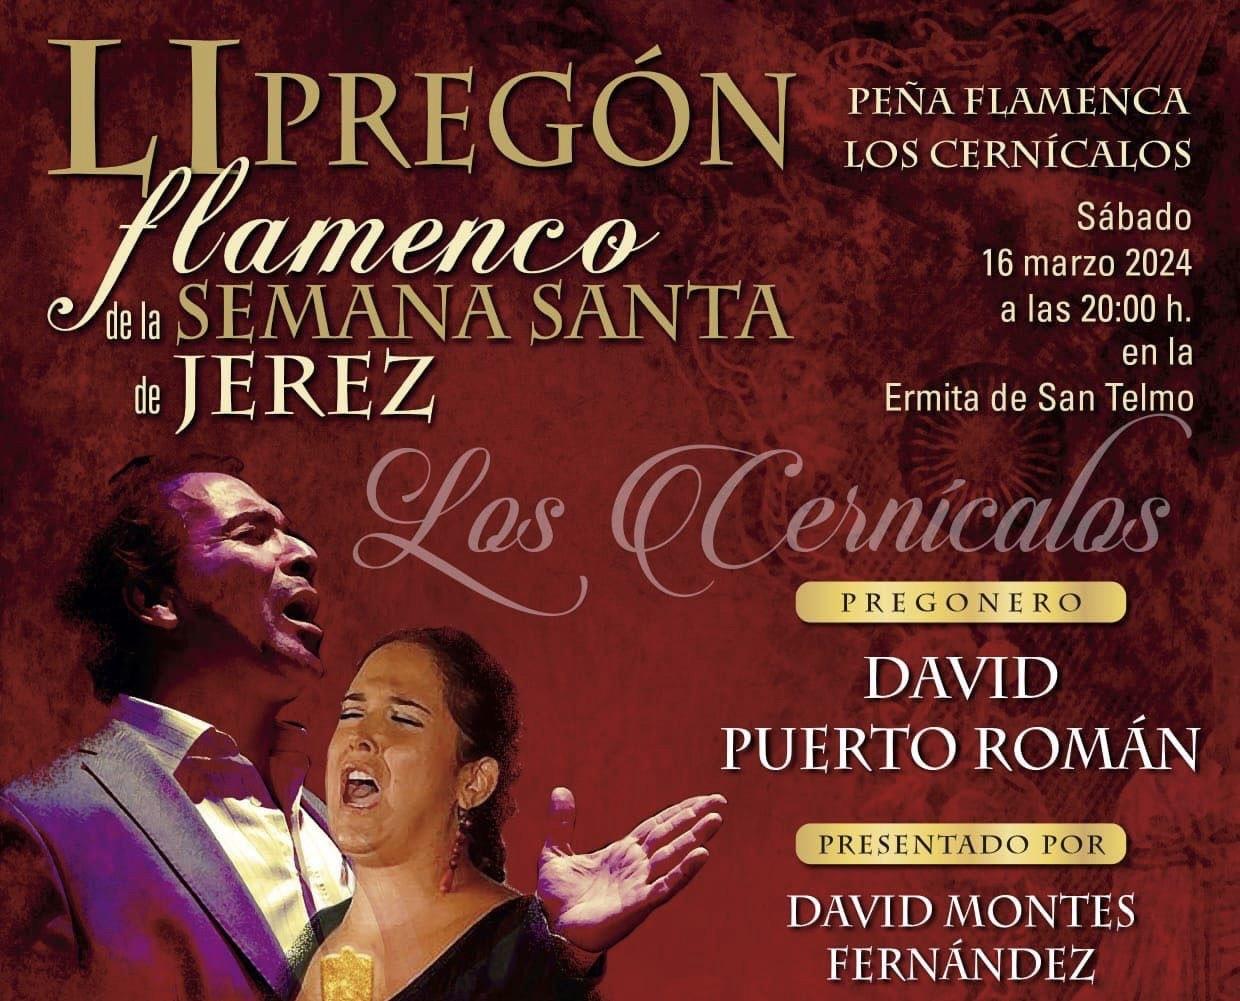 David Puerto hará el Pregón Flamenco de la Semana Santa